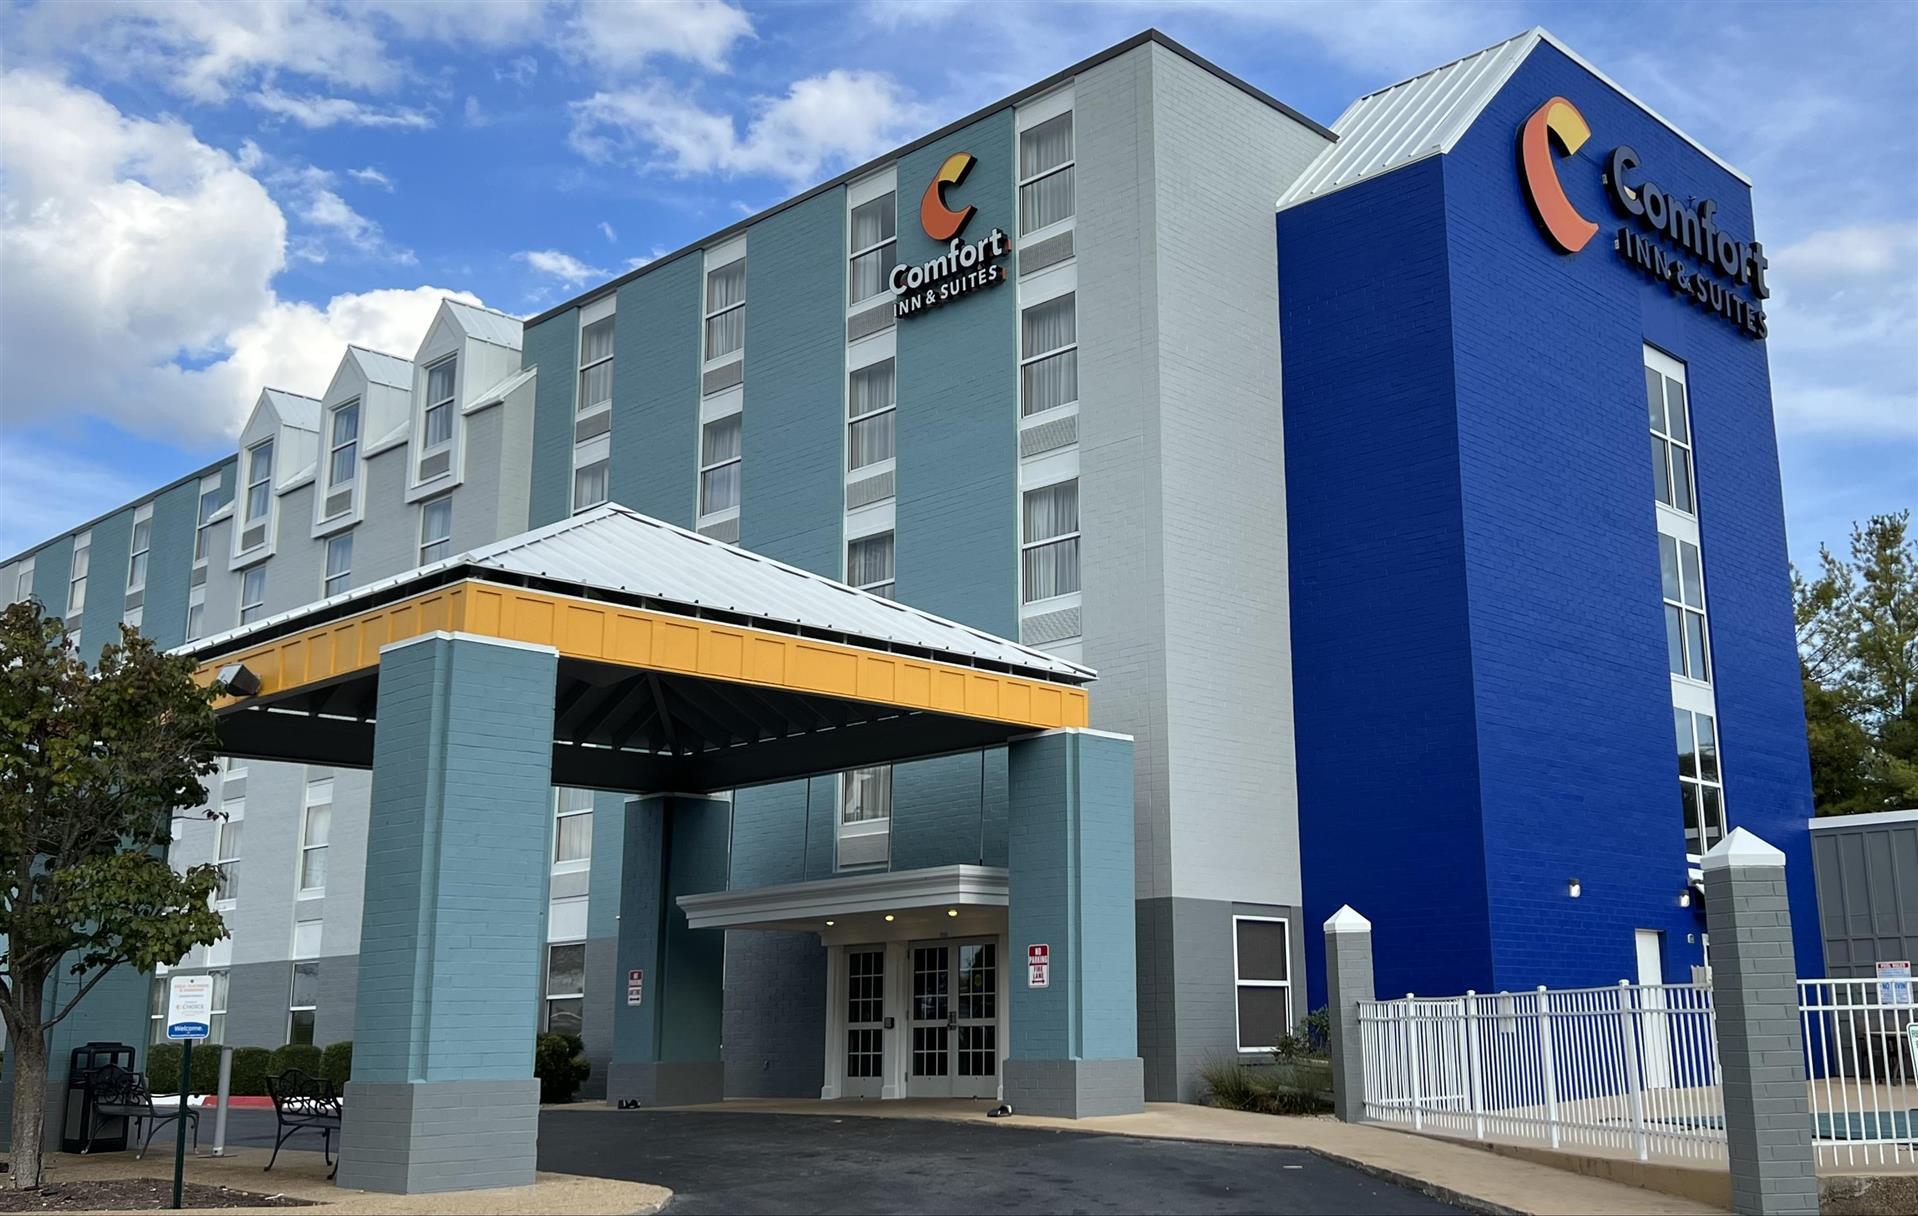 Comfort Inn and Suites Staunton in Staunton, VA